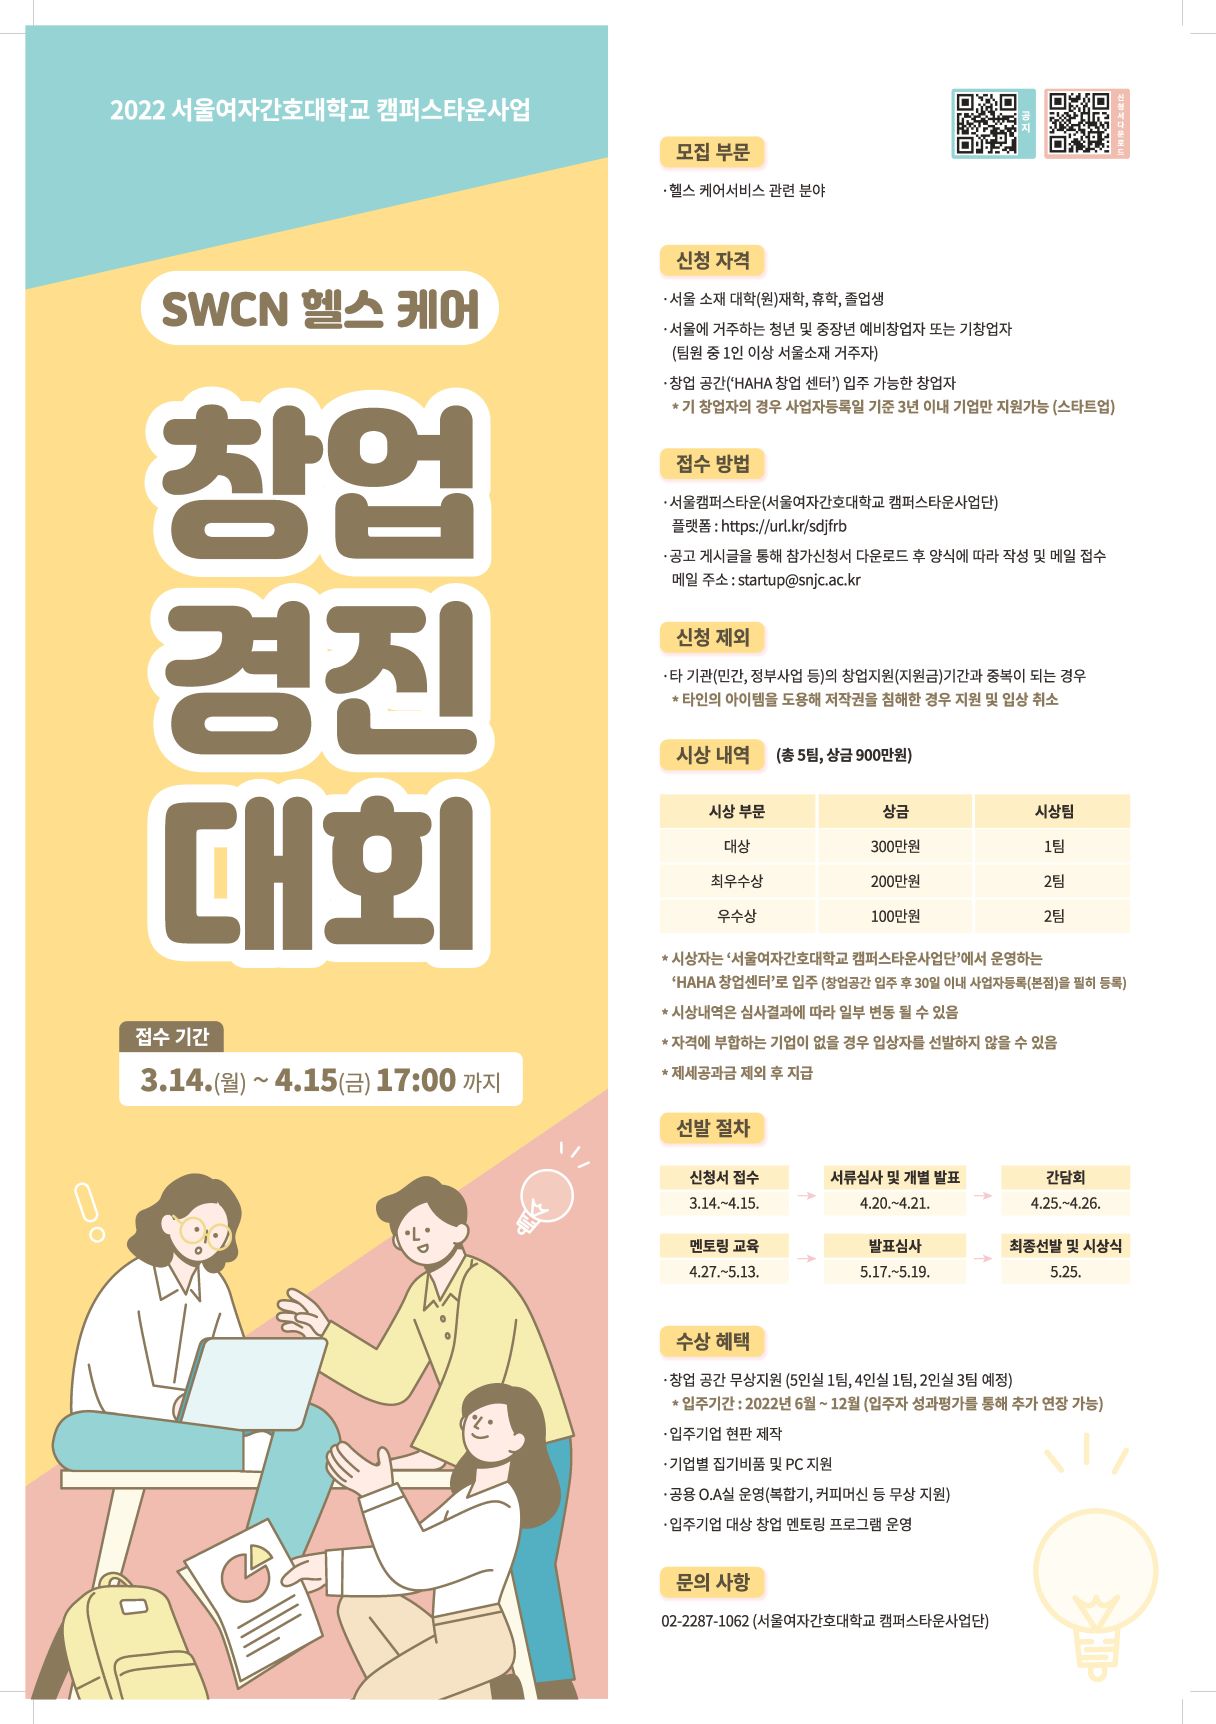 2022 SWCN 헬스케어 창업경진대회